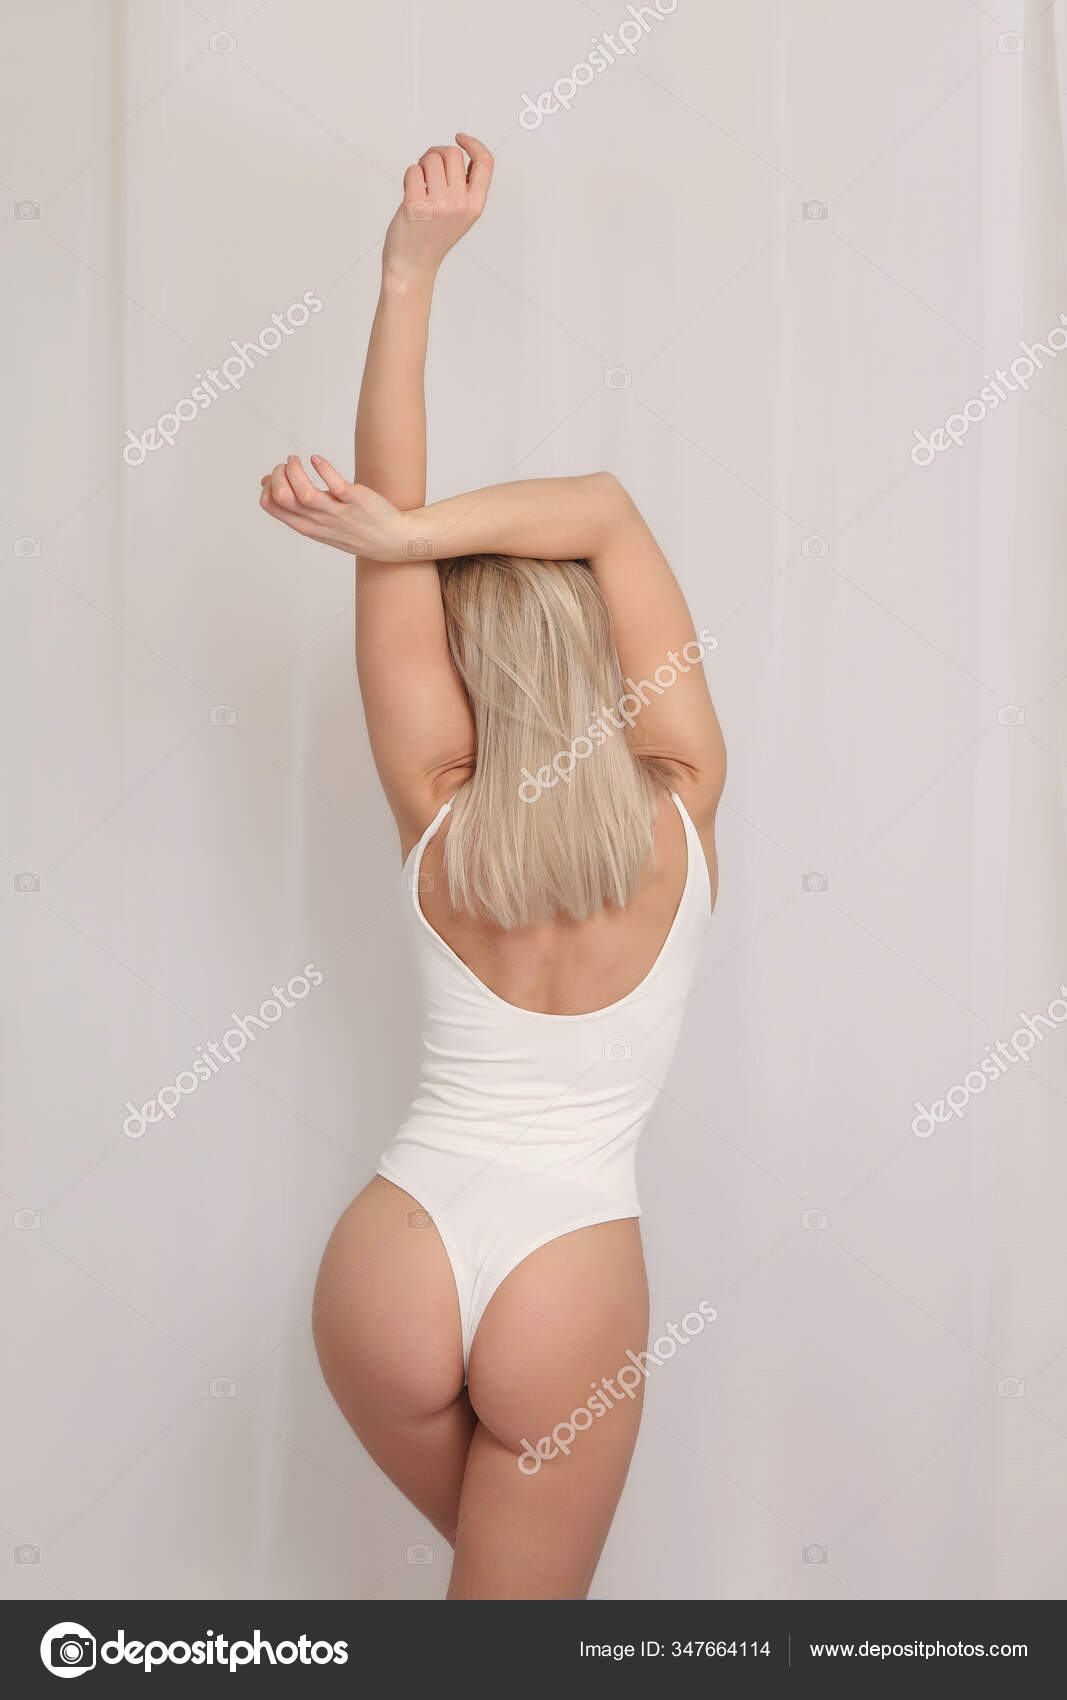 https://st3n.depositphotos.com/2970081/34766/i/1600/depositphotos_347664114-stock-photo-young-sexy-girl-nude-beautiful.jpg